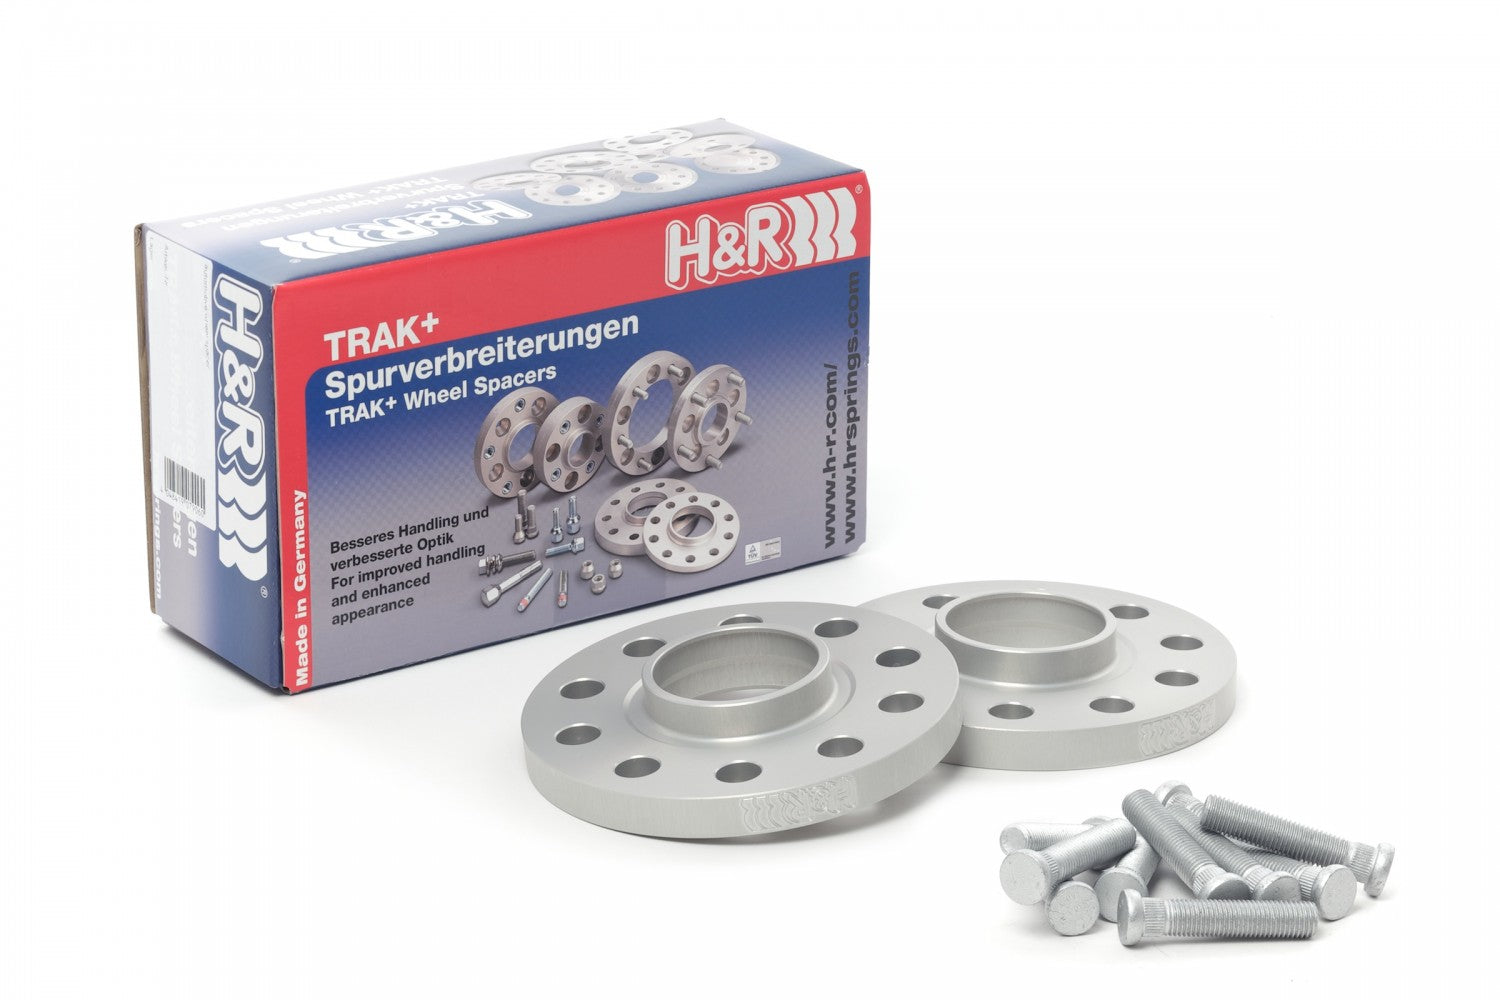 H&R TRAK+ Wheel Spacers - Pair - DRS Series - 15mm 5x114.3 / 64.1 / 12x1.5 - 3065640 - SILVER